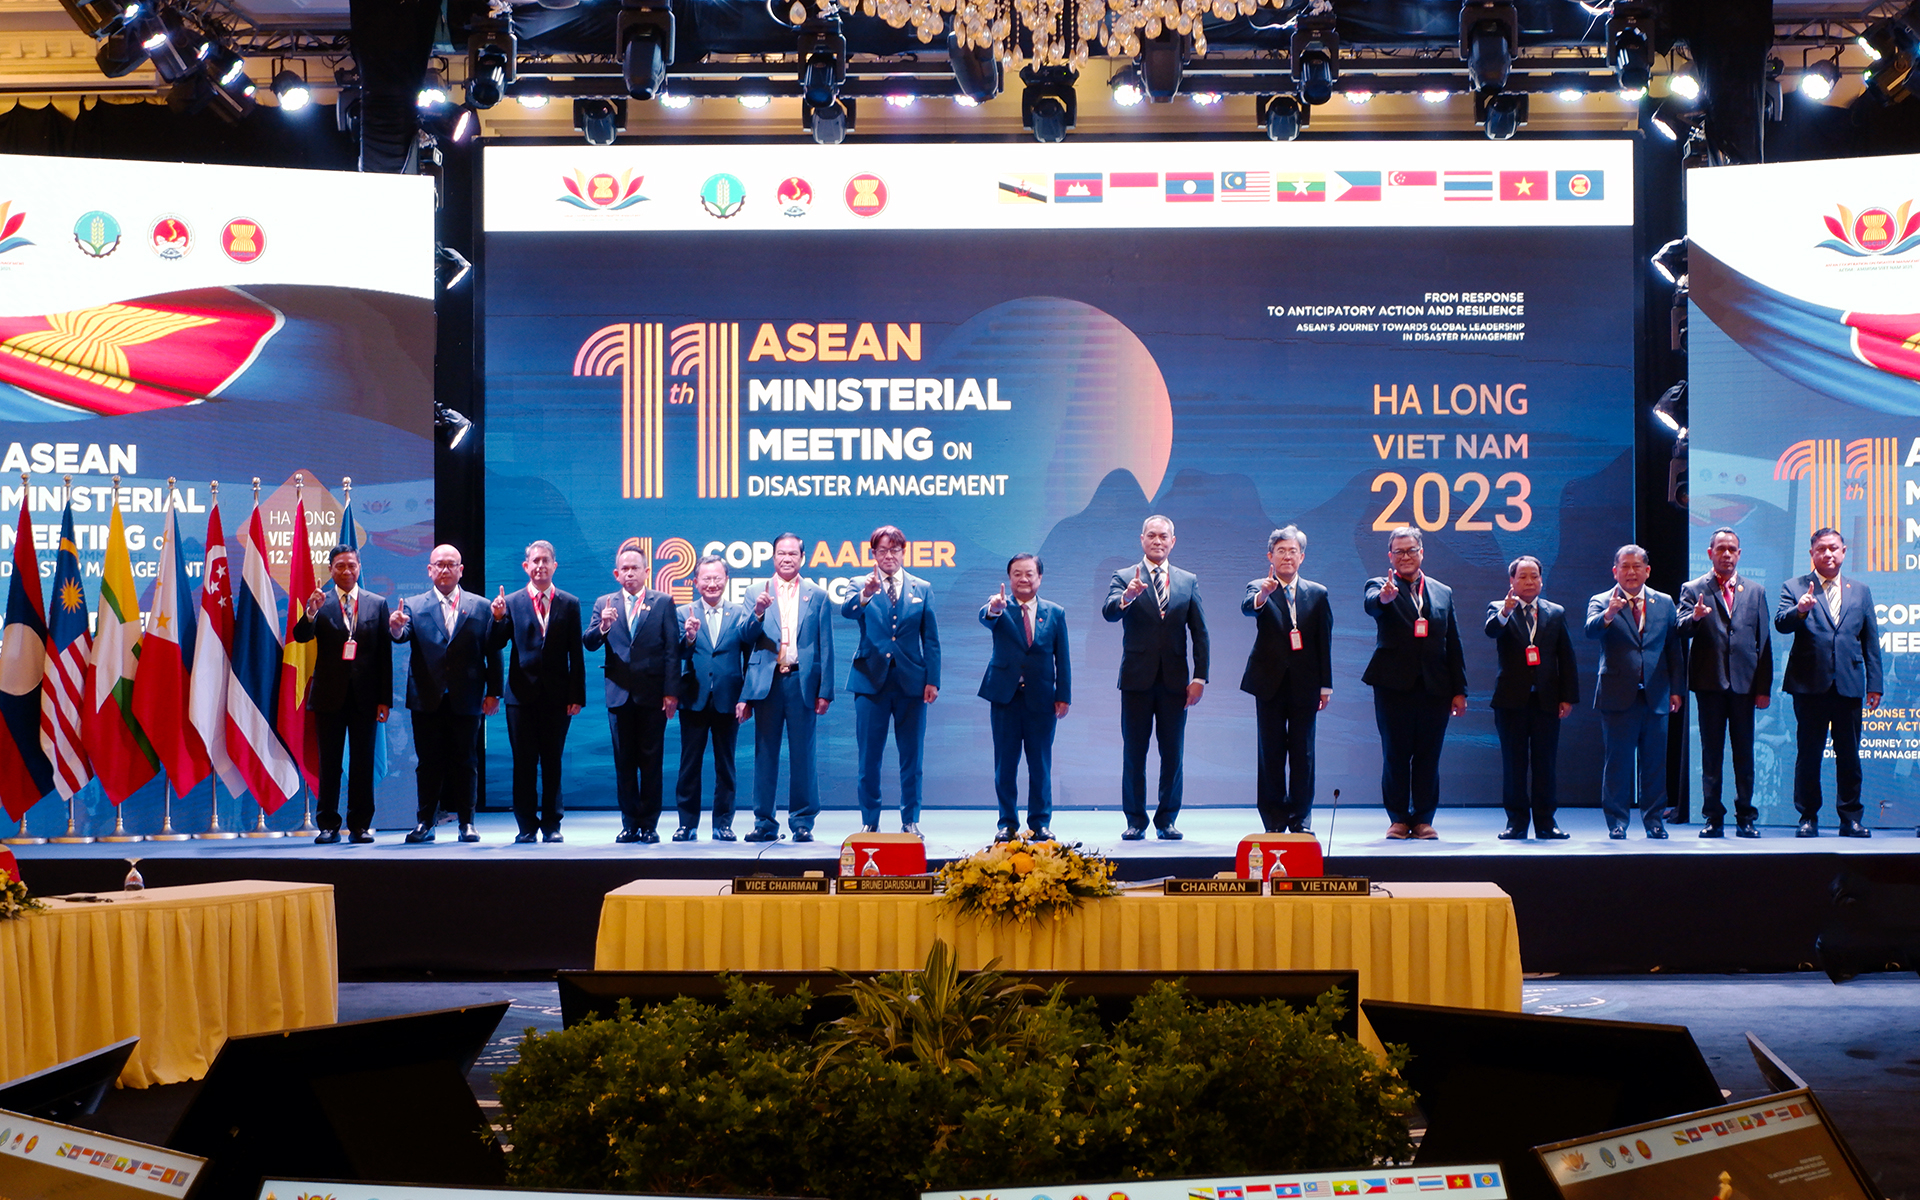 Bộ trưởng Lê Minh Hoan cùng lãnh đạo các quốc gia ASEAN và 3 nước Nhật Bản, Trung Quốc, Hàn Quốc chụp ảnh lưu niệm. Ảnh: Bảo Thắng.